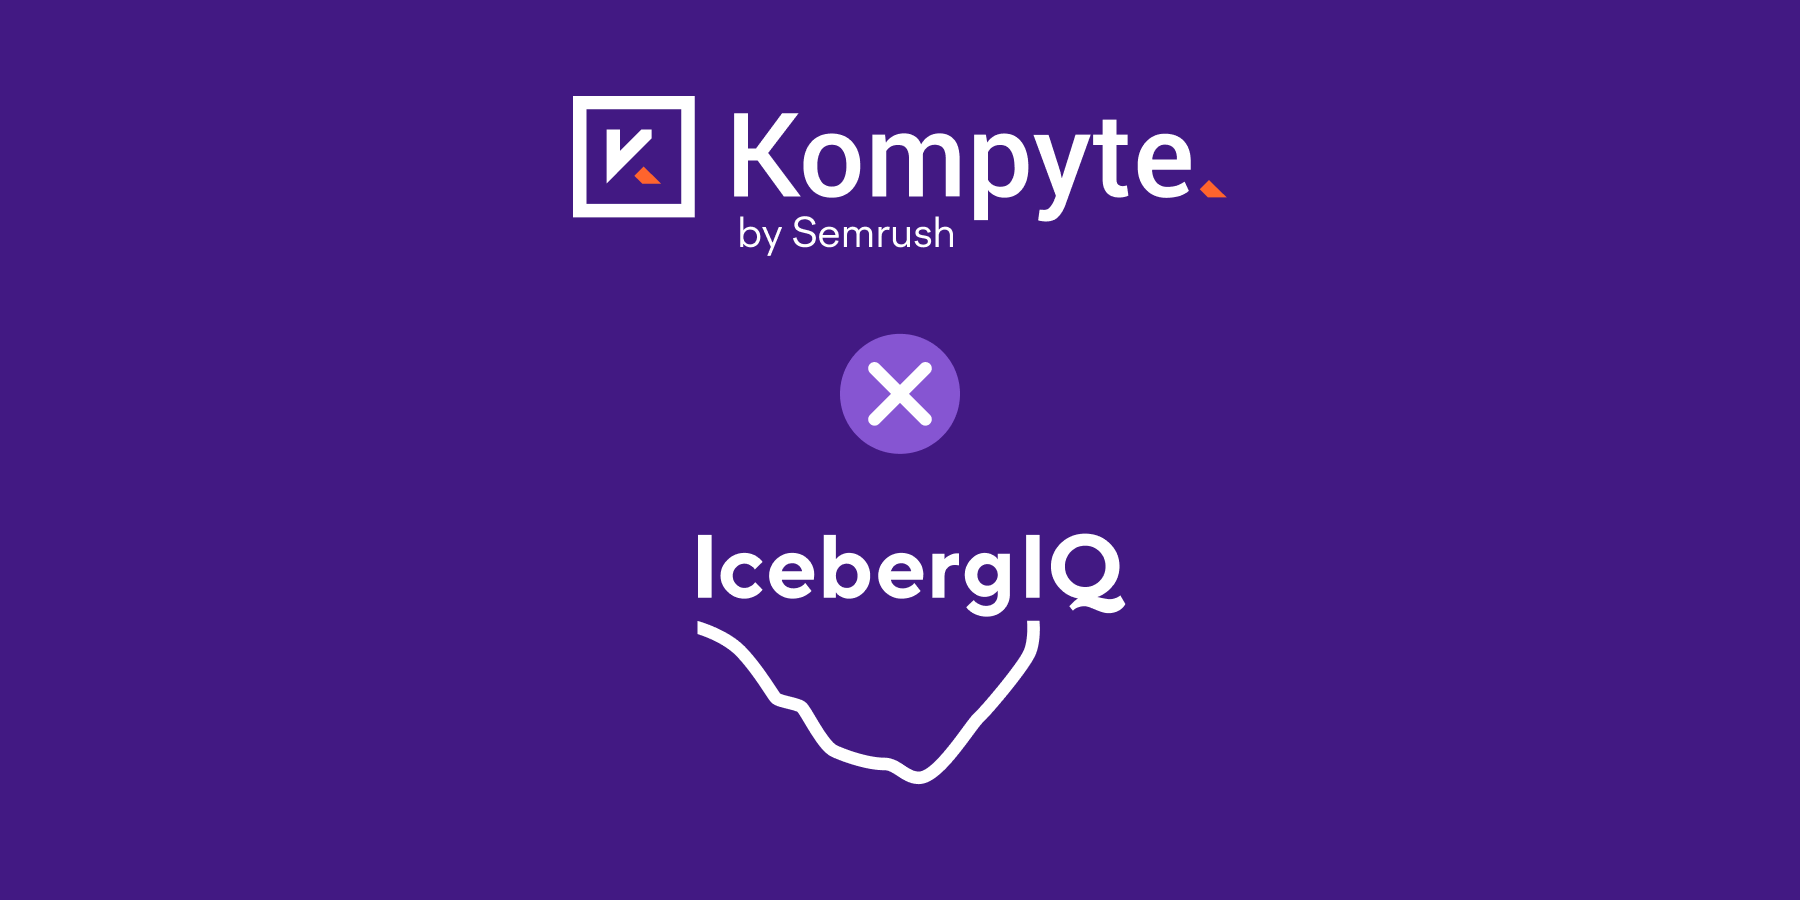 Kompyte von Semrush schließt sich mit IcebergIQ zusammen, um Wettbewerbsintelligenz zu transformieren